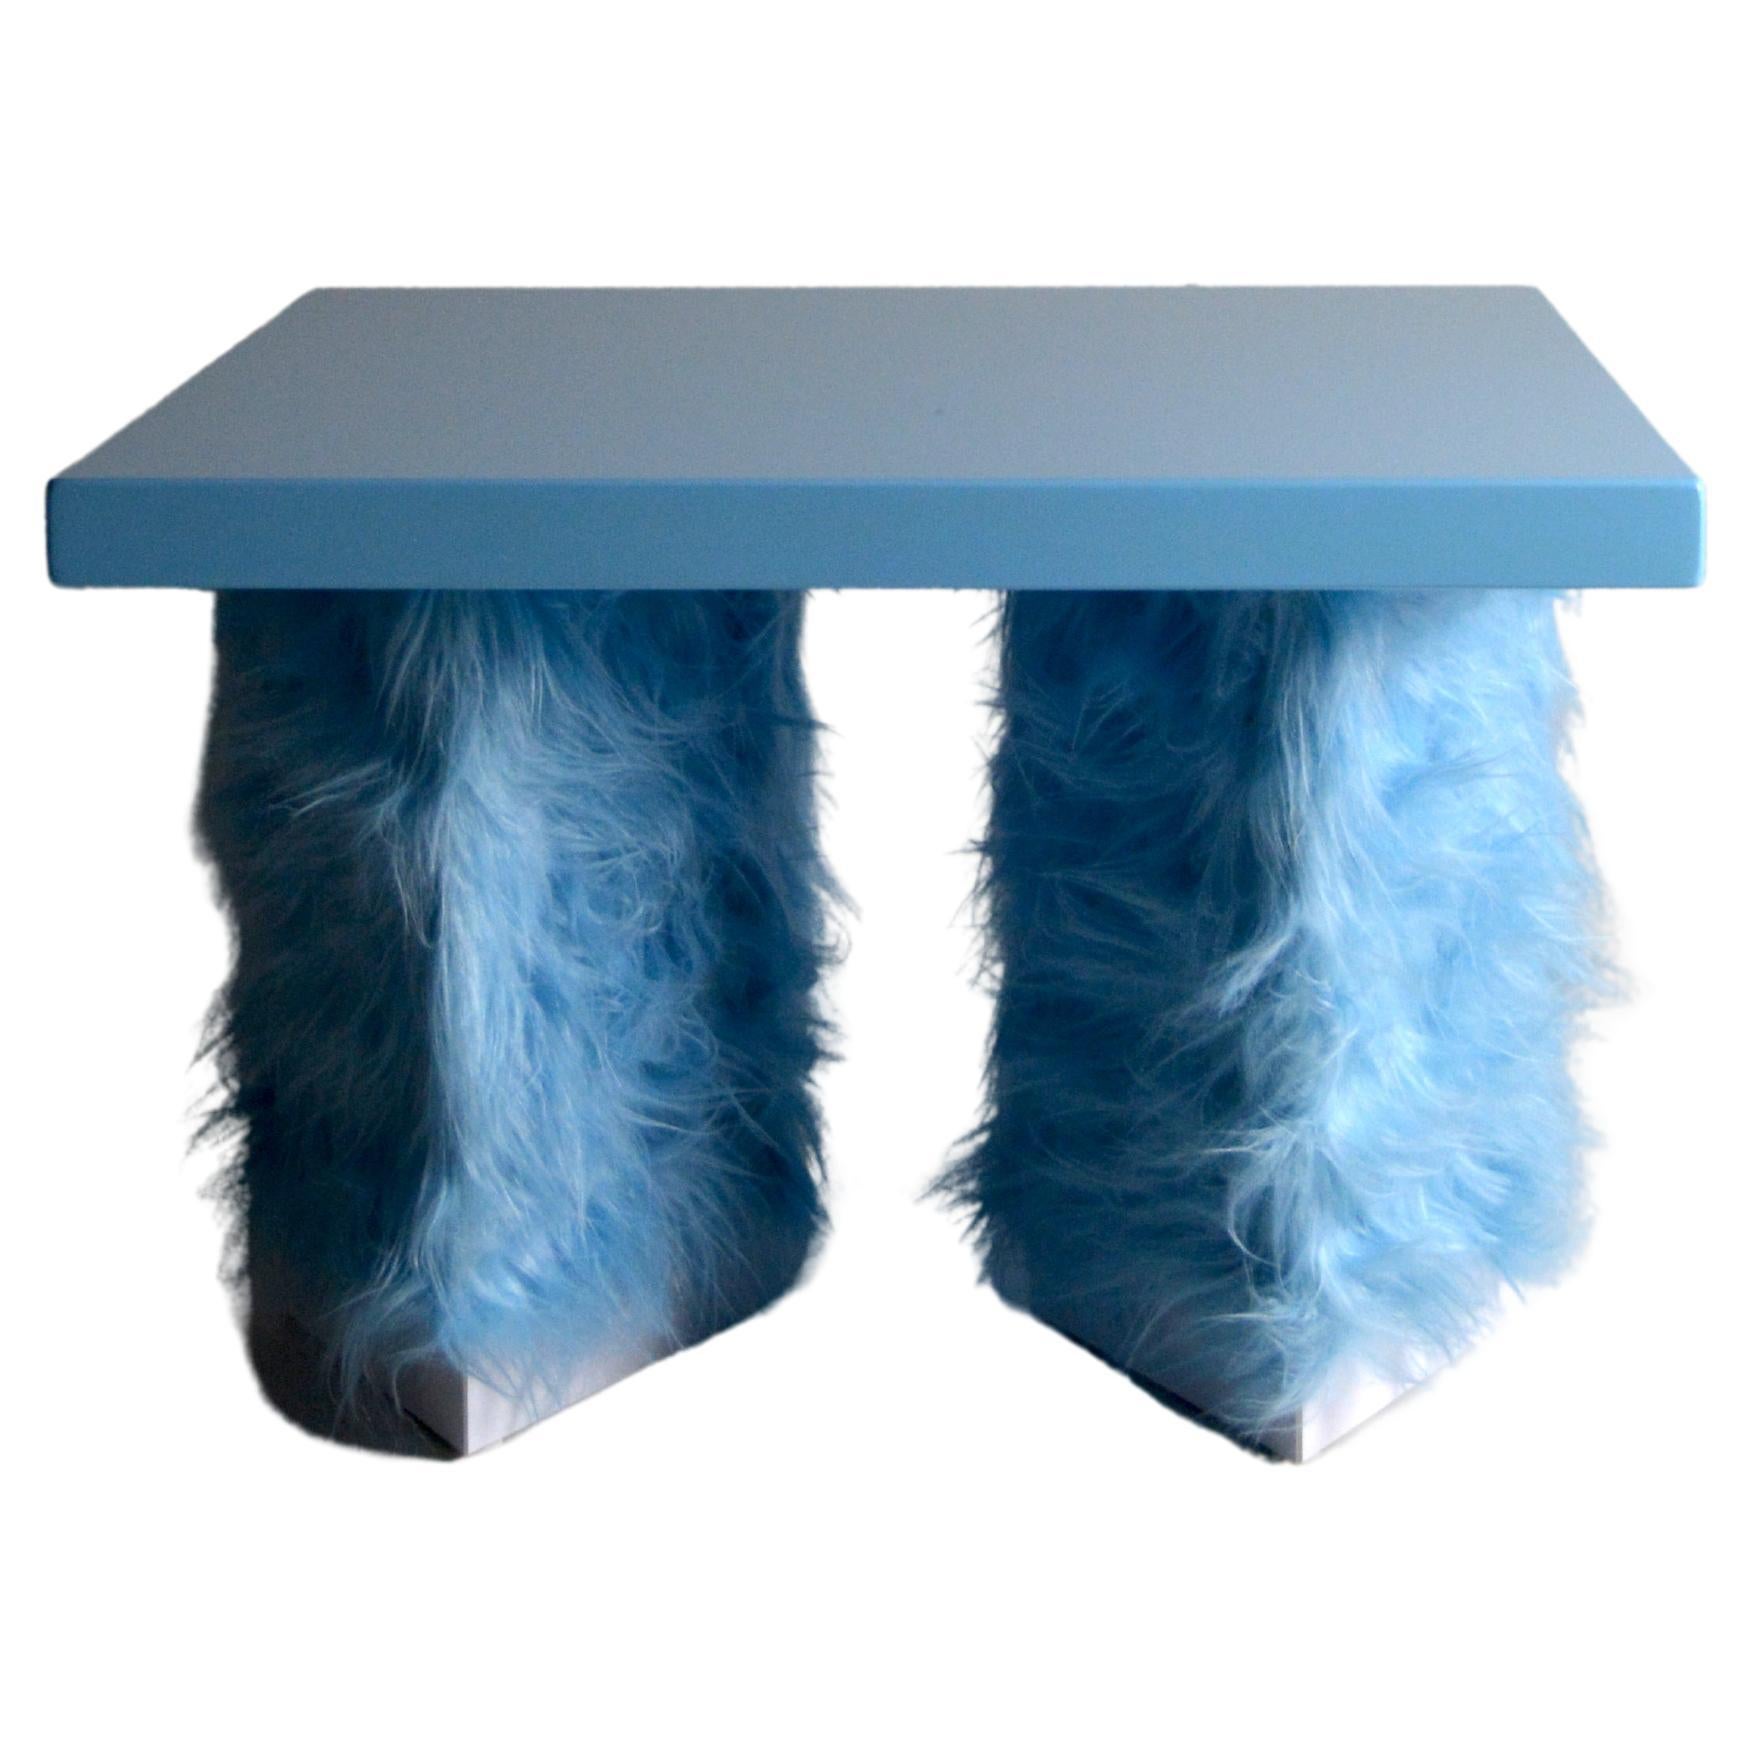 Eccentrico Studio Greca contemporary light blue fur lacquered wood coffee table